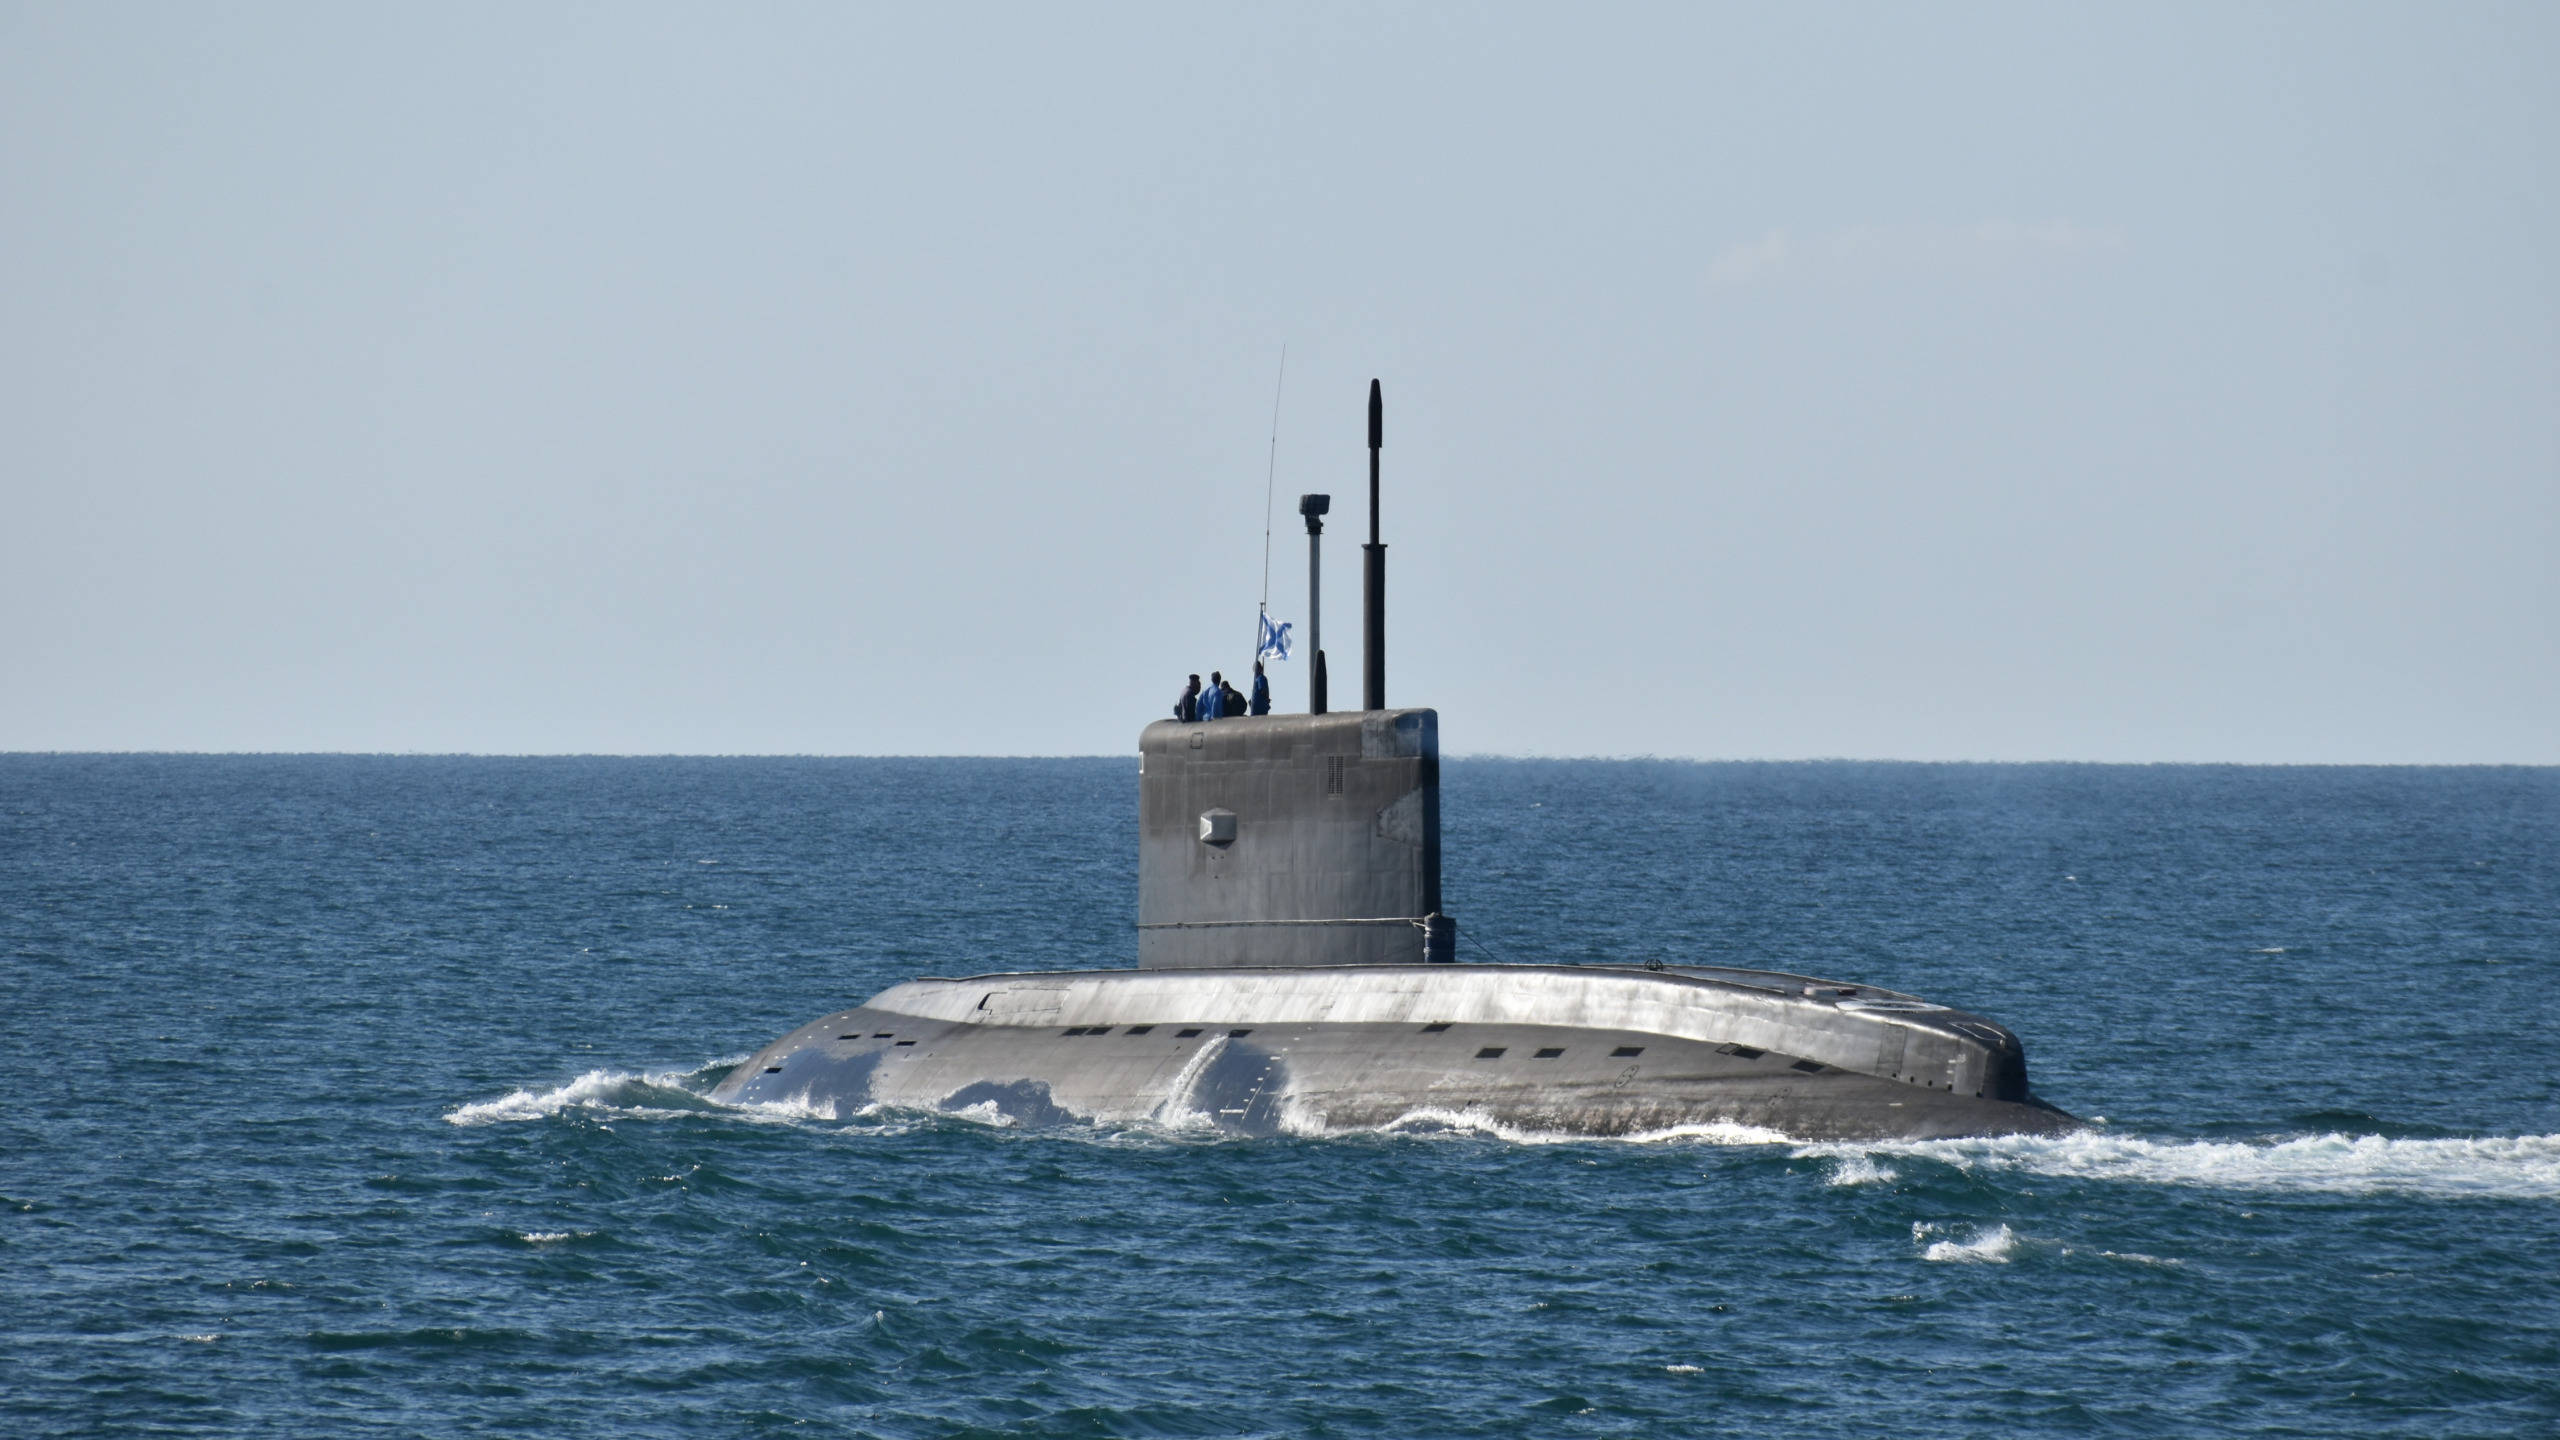 原创俄基洛级潜艇为冷战而生,攻击火力强大,被誉"大洋黑洞"